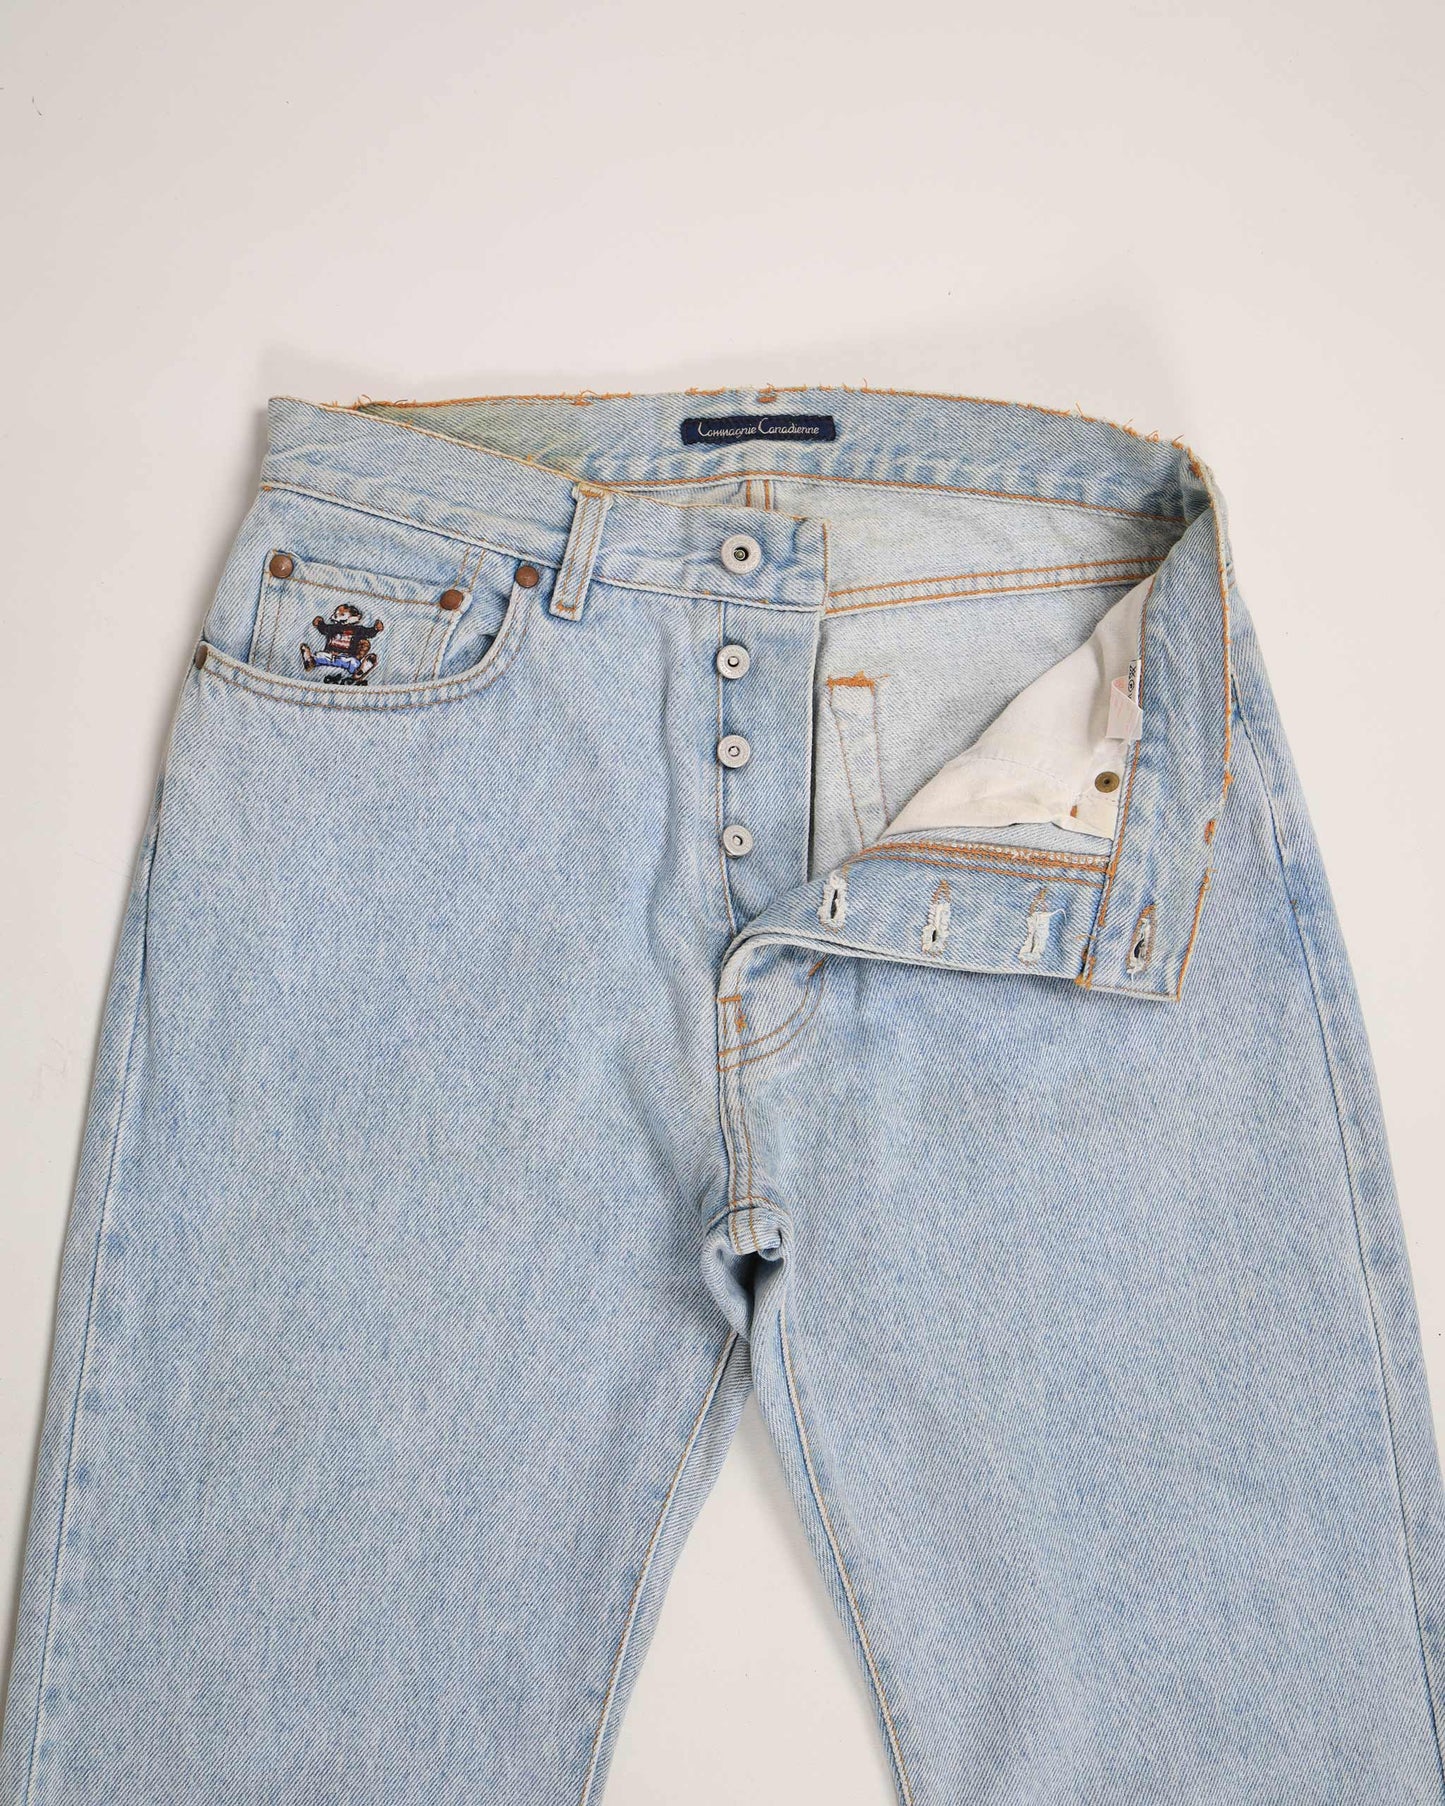 Jeans vintage in denim a vita alta della Compagnie Canadienne